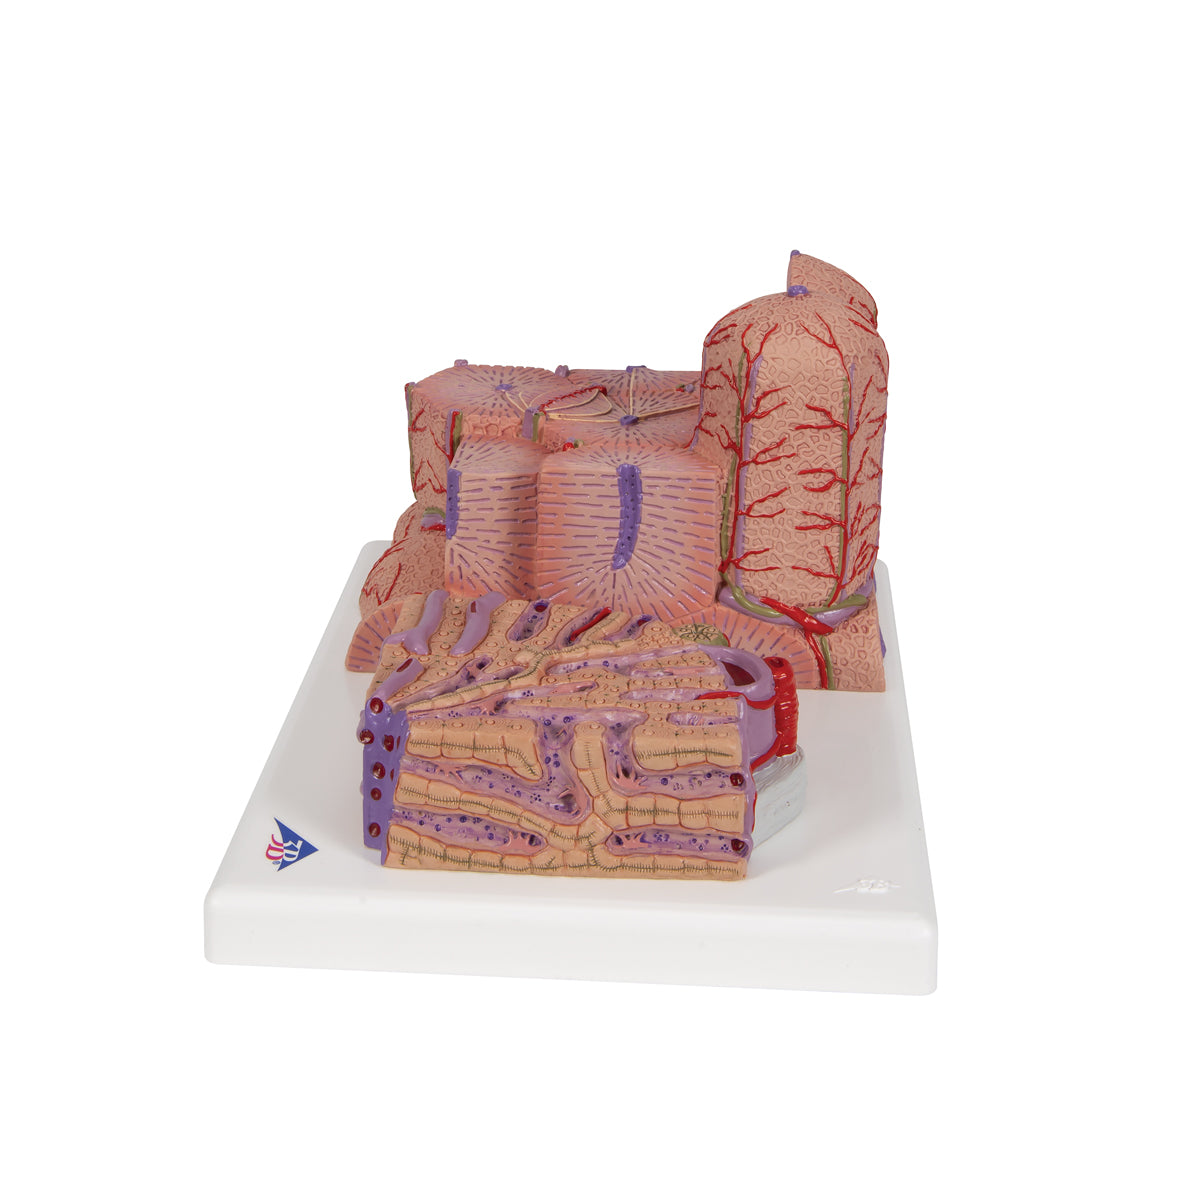 Detaljeret model af leverens væv og blodkar i et mikroskopisk perspektiv